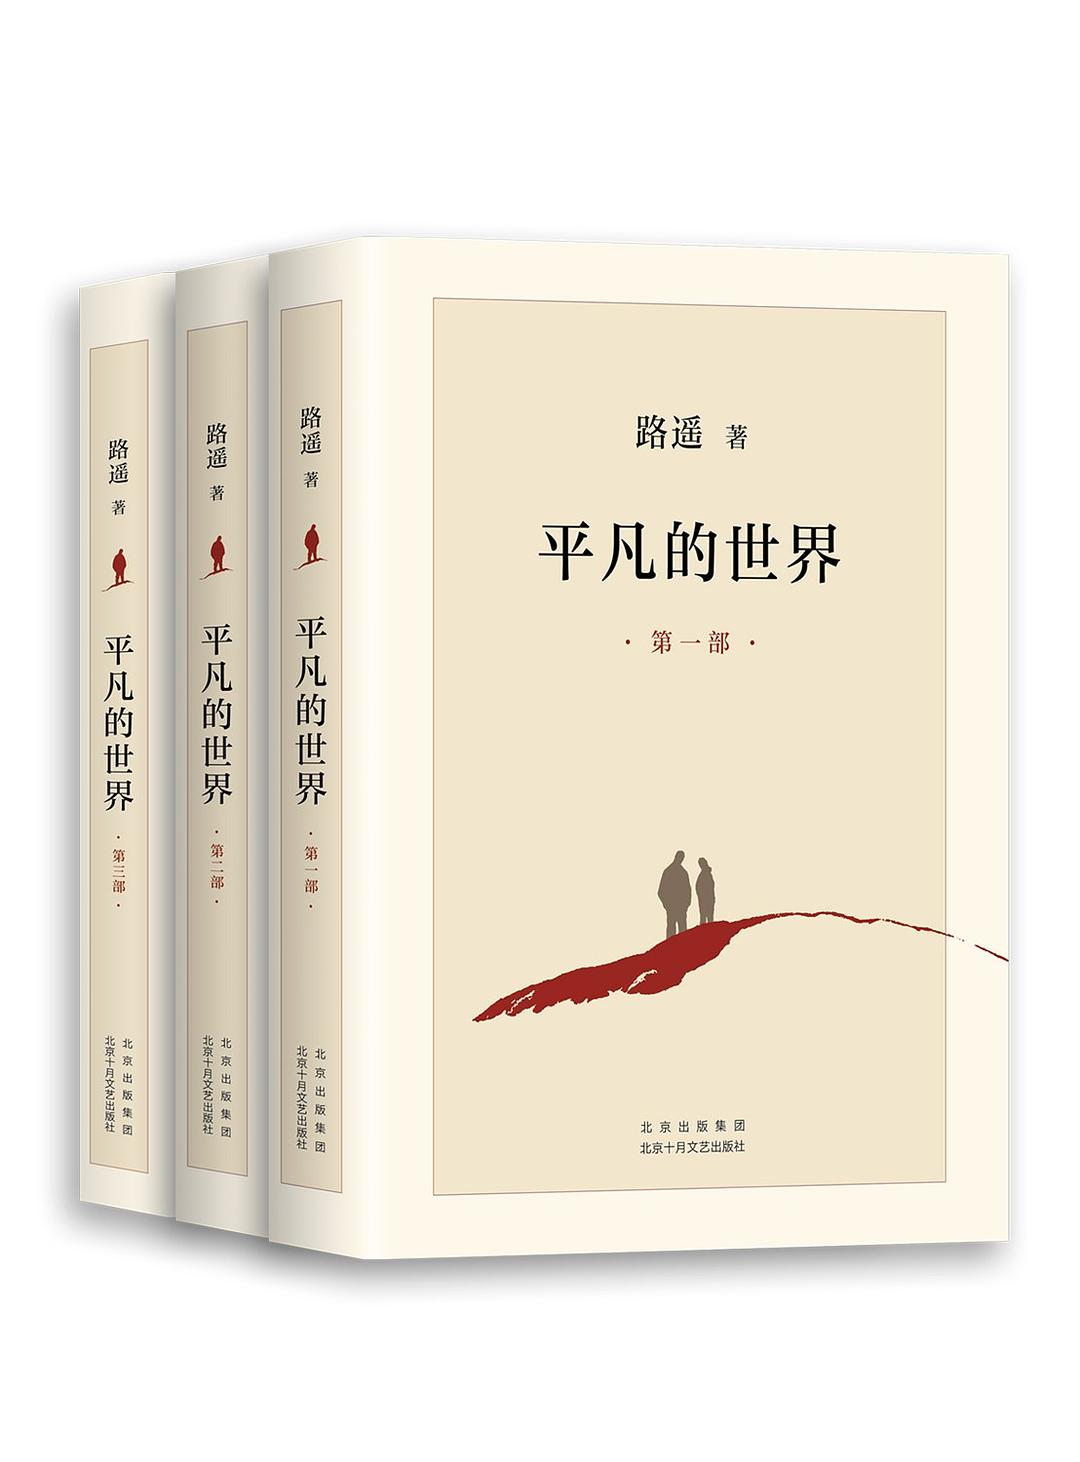 《平凡的世界（全三部）》作者: 路遥 出版社: 北京十月文艺出版社